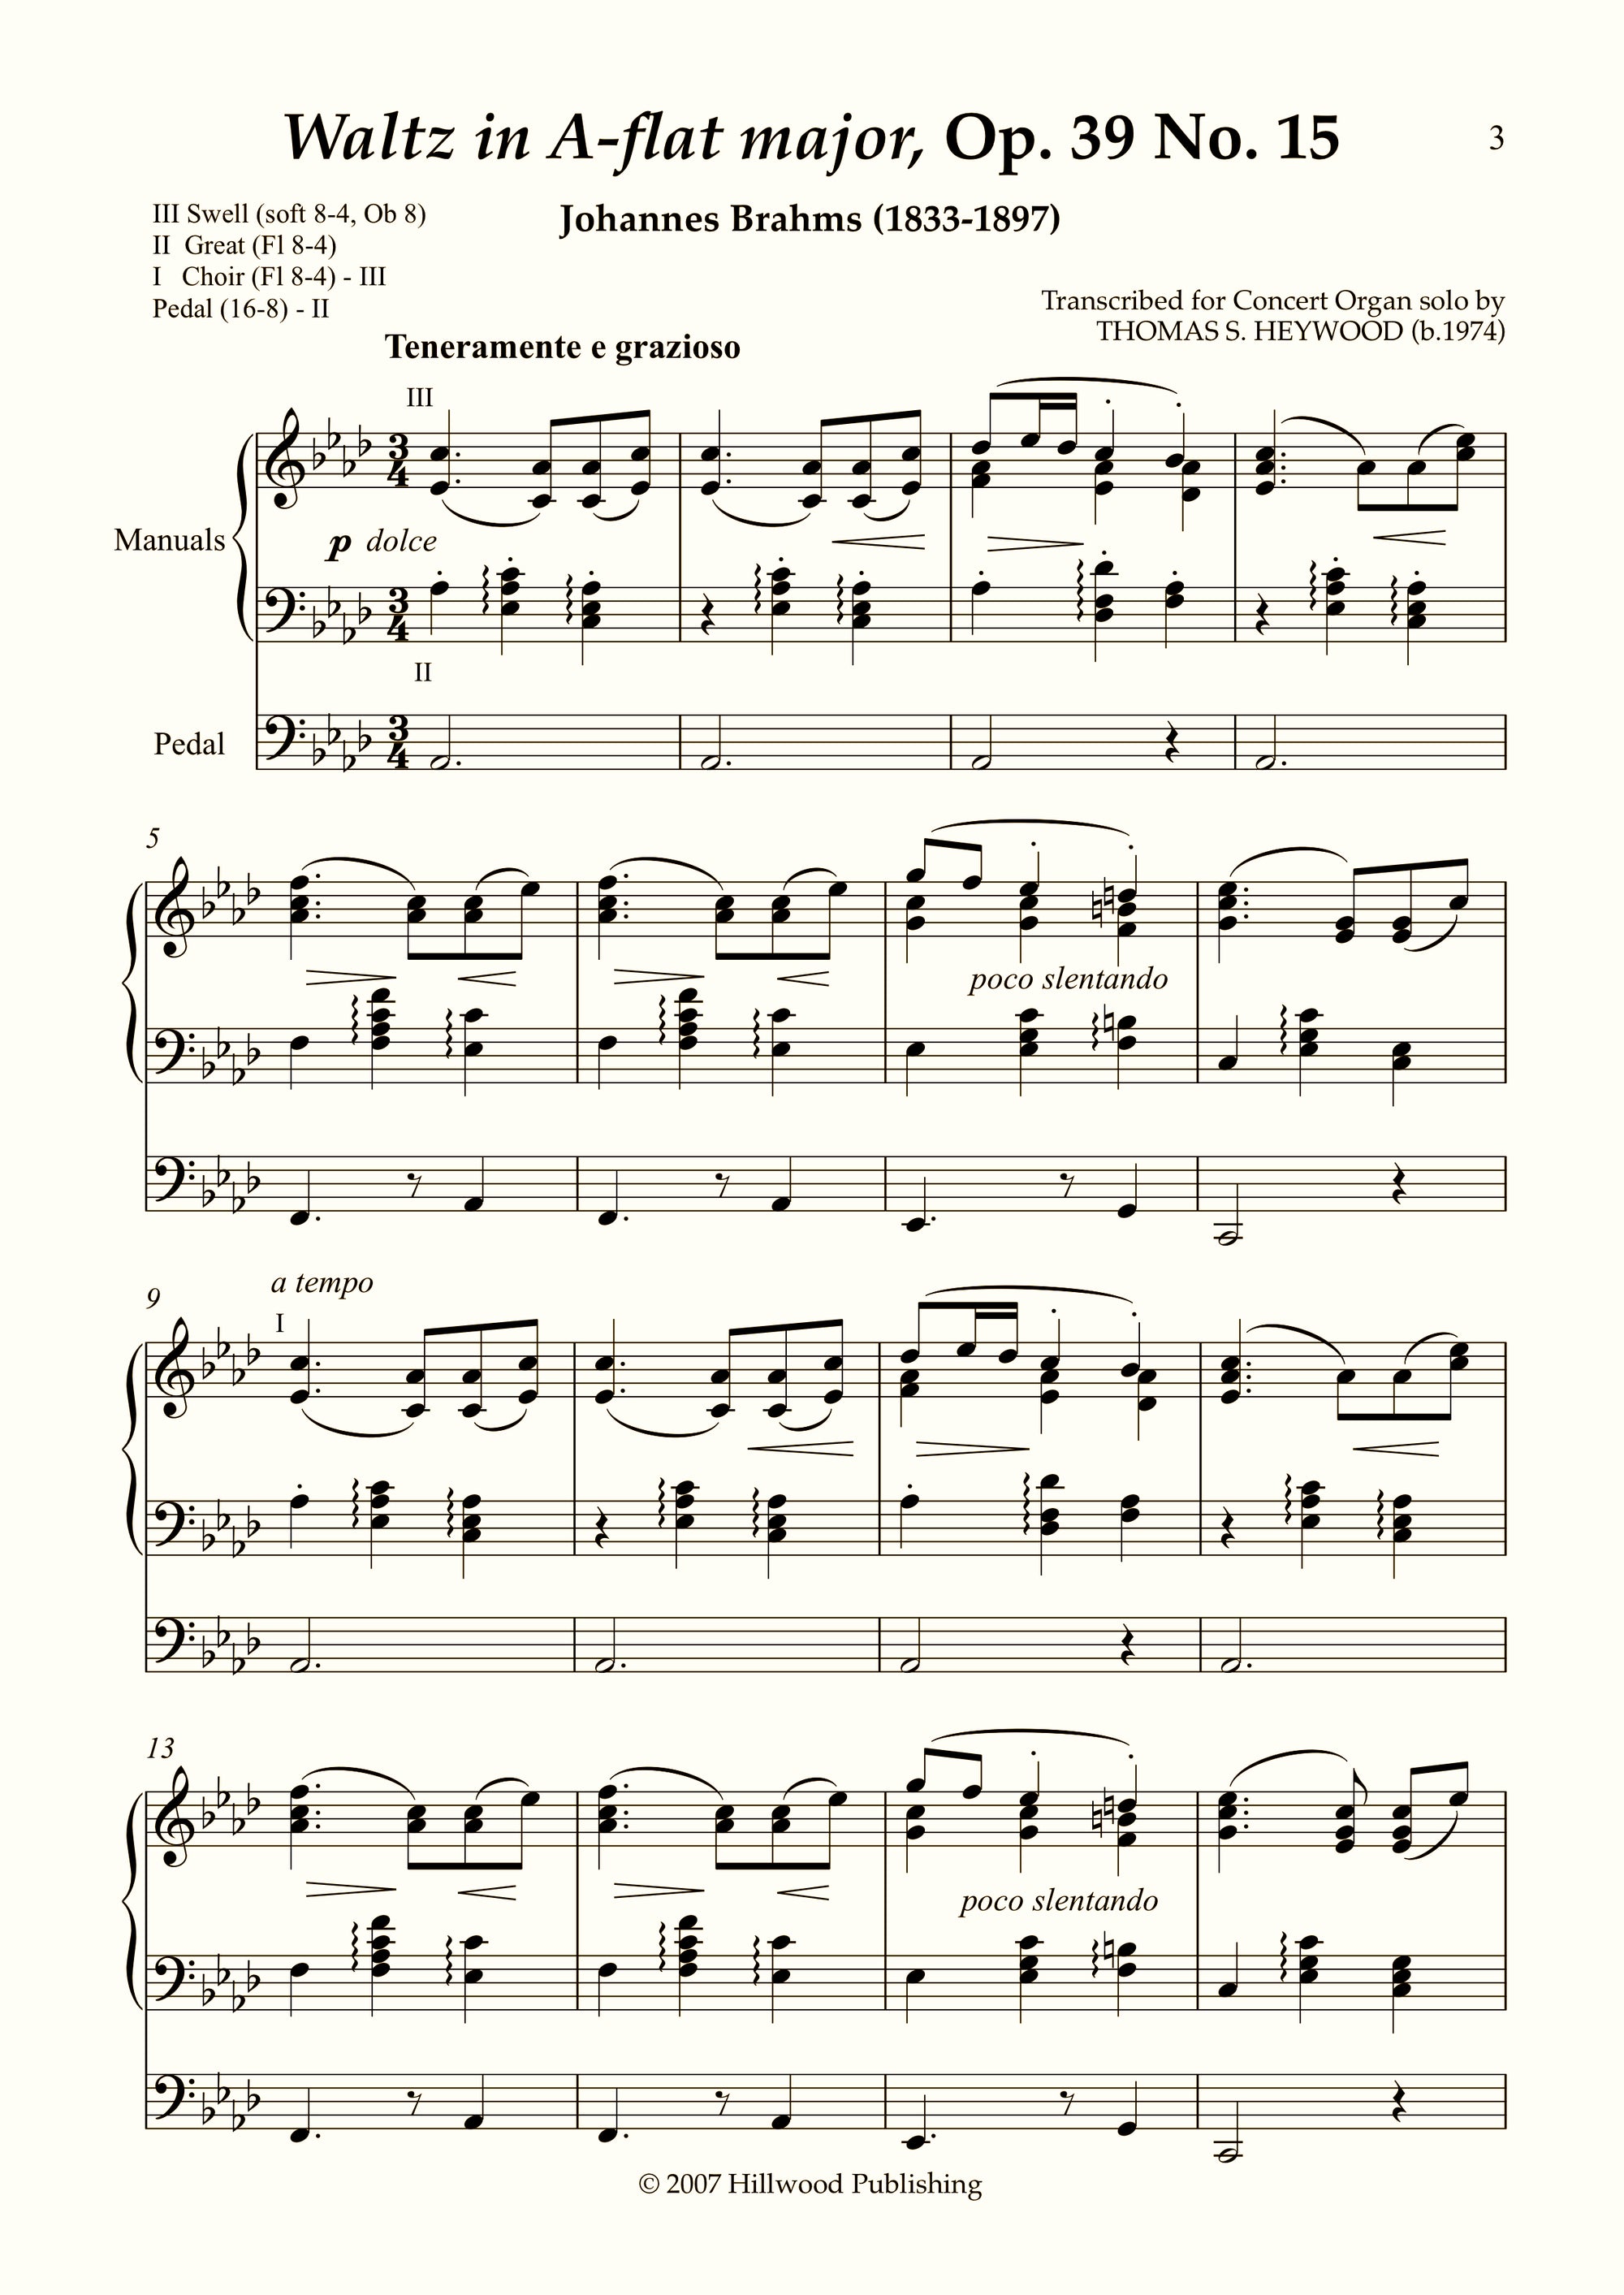 Brahms/Heywood - Waltz in A-flat major from Sixteen Waltzes, Op. 39 No. 15 (Score)